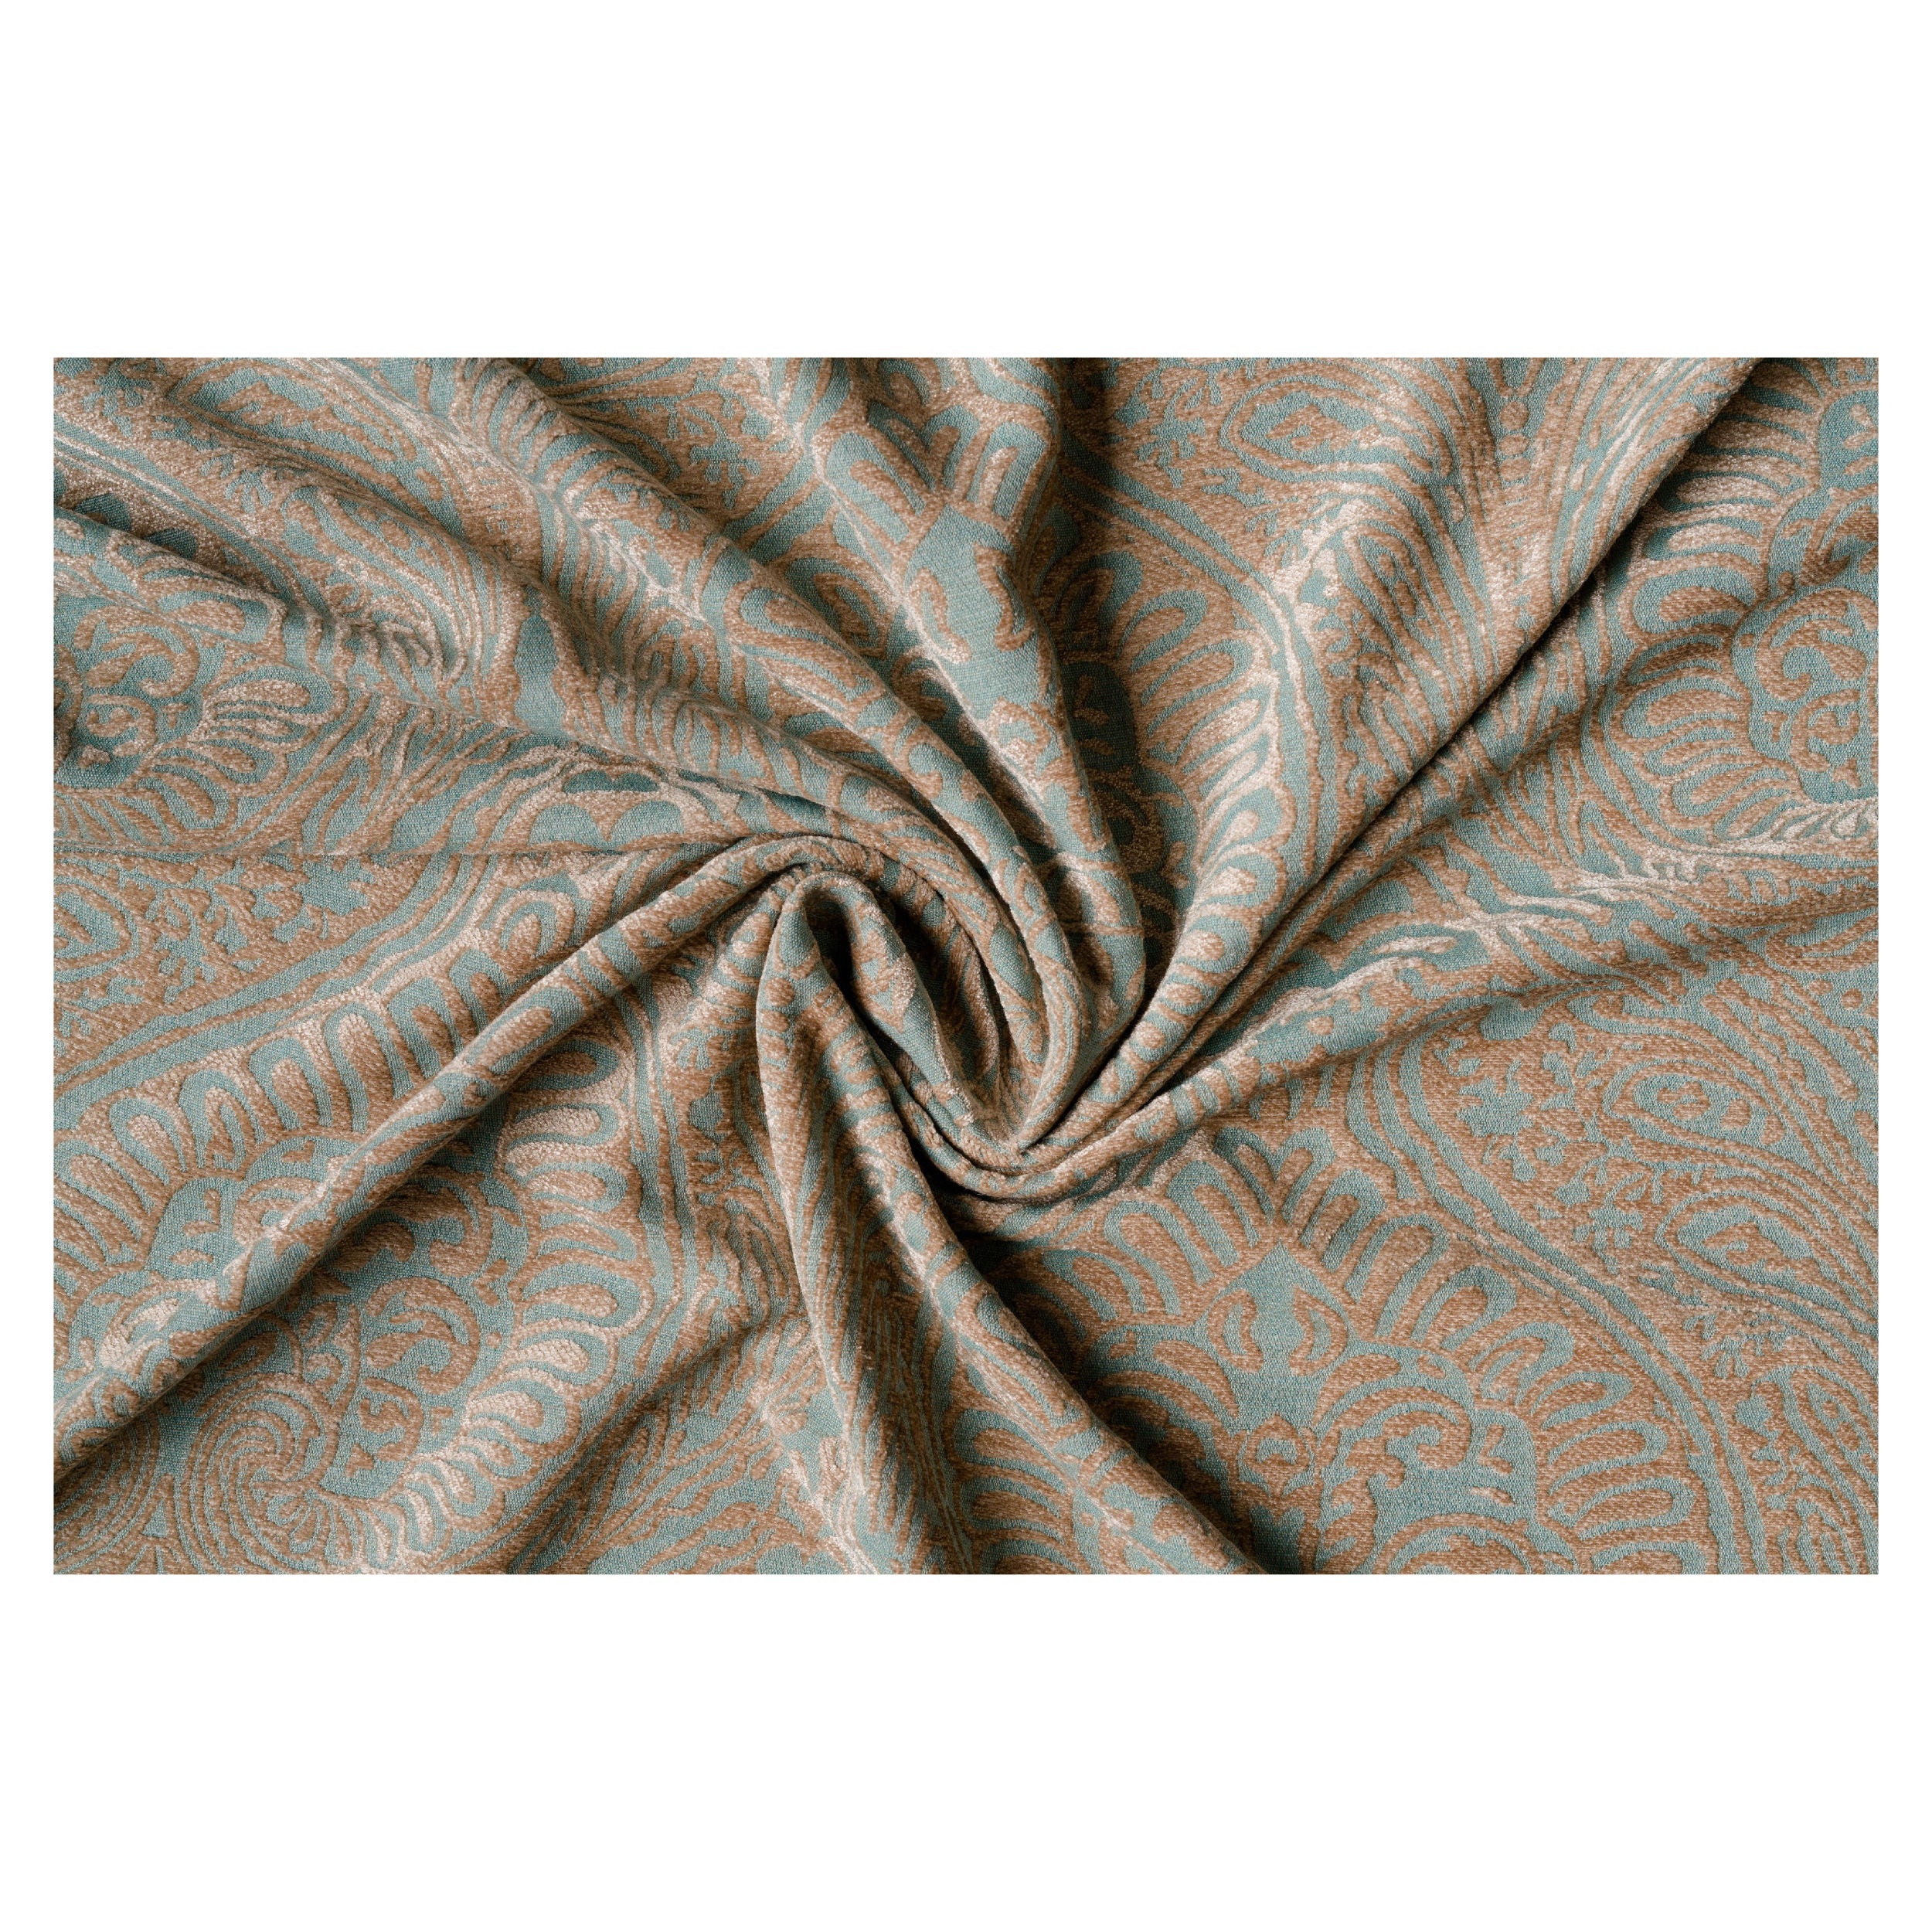 Draperie Mendola Fabrics, model Eldorado, Quadra, jacquard, albastru, semiopac, 280 cm